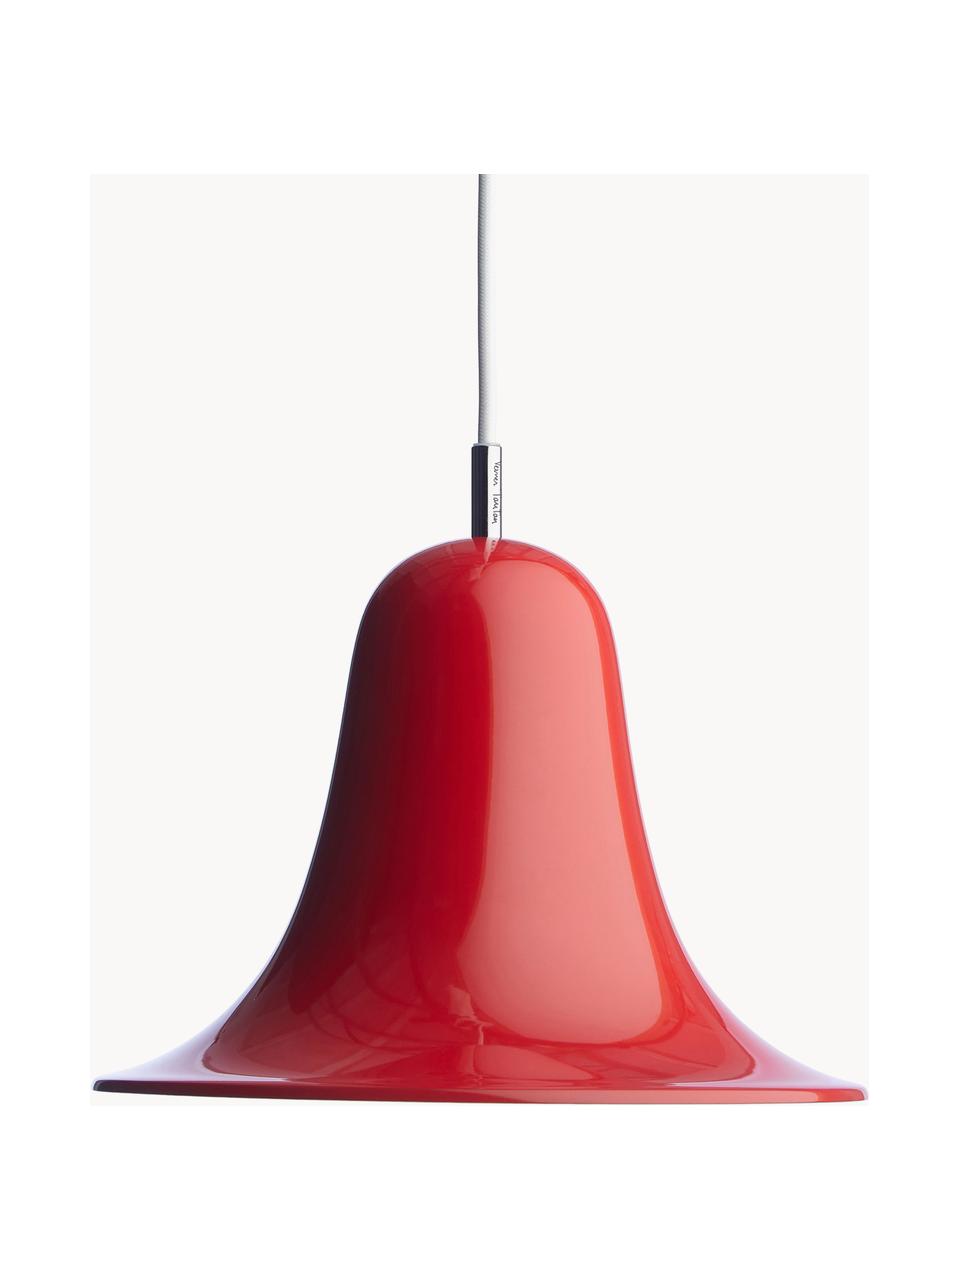 Lampada a sospensione piccola Pantop, Paralume: metallo rivestito, Rosso, Ø 23 x Alt. 17 cm